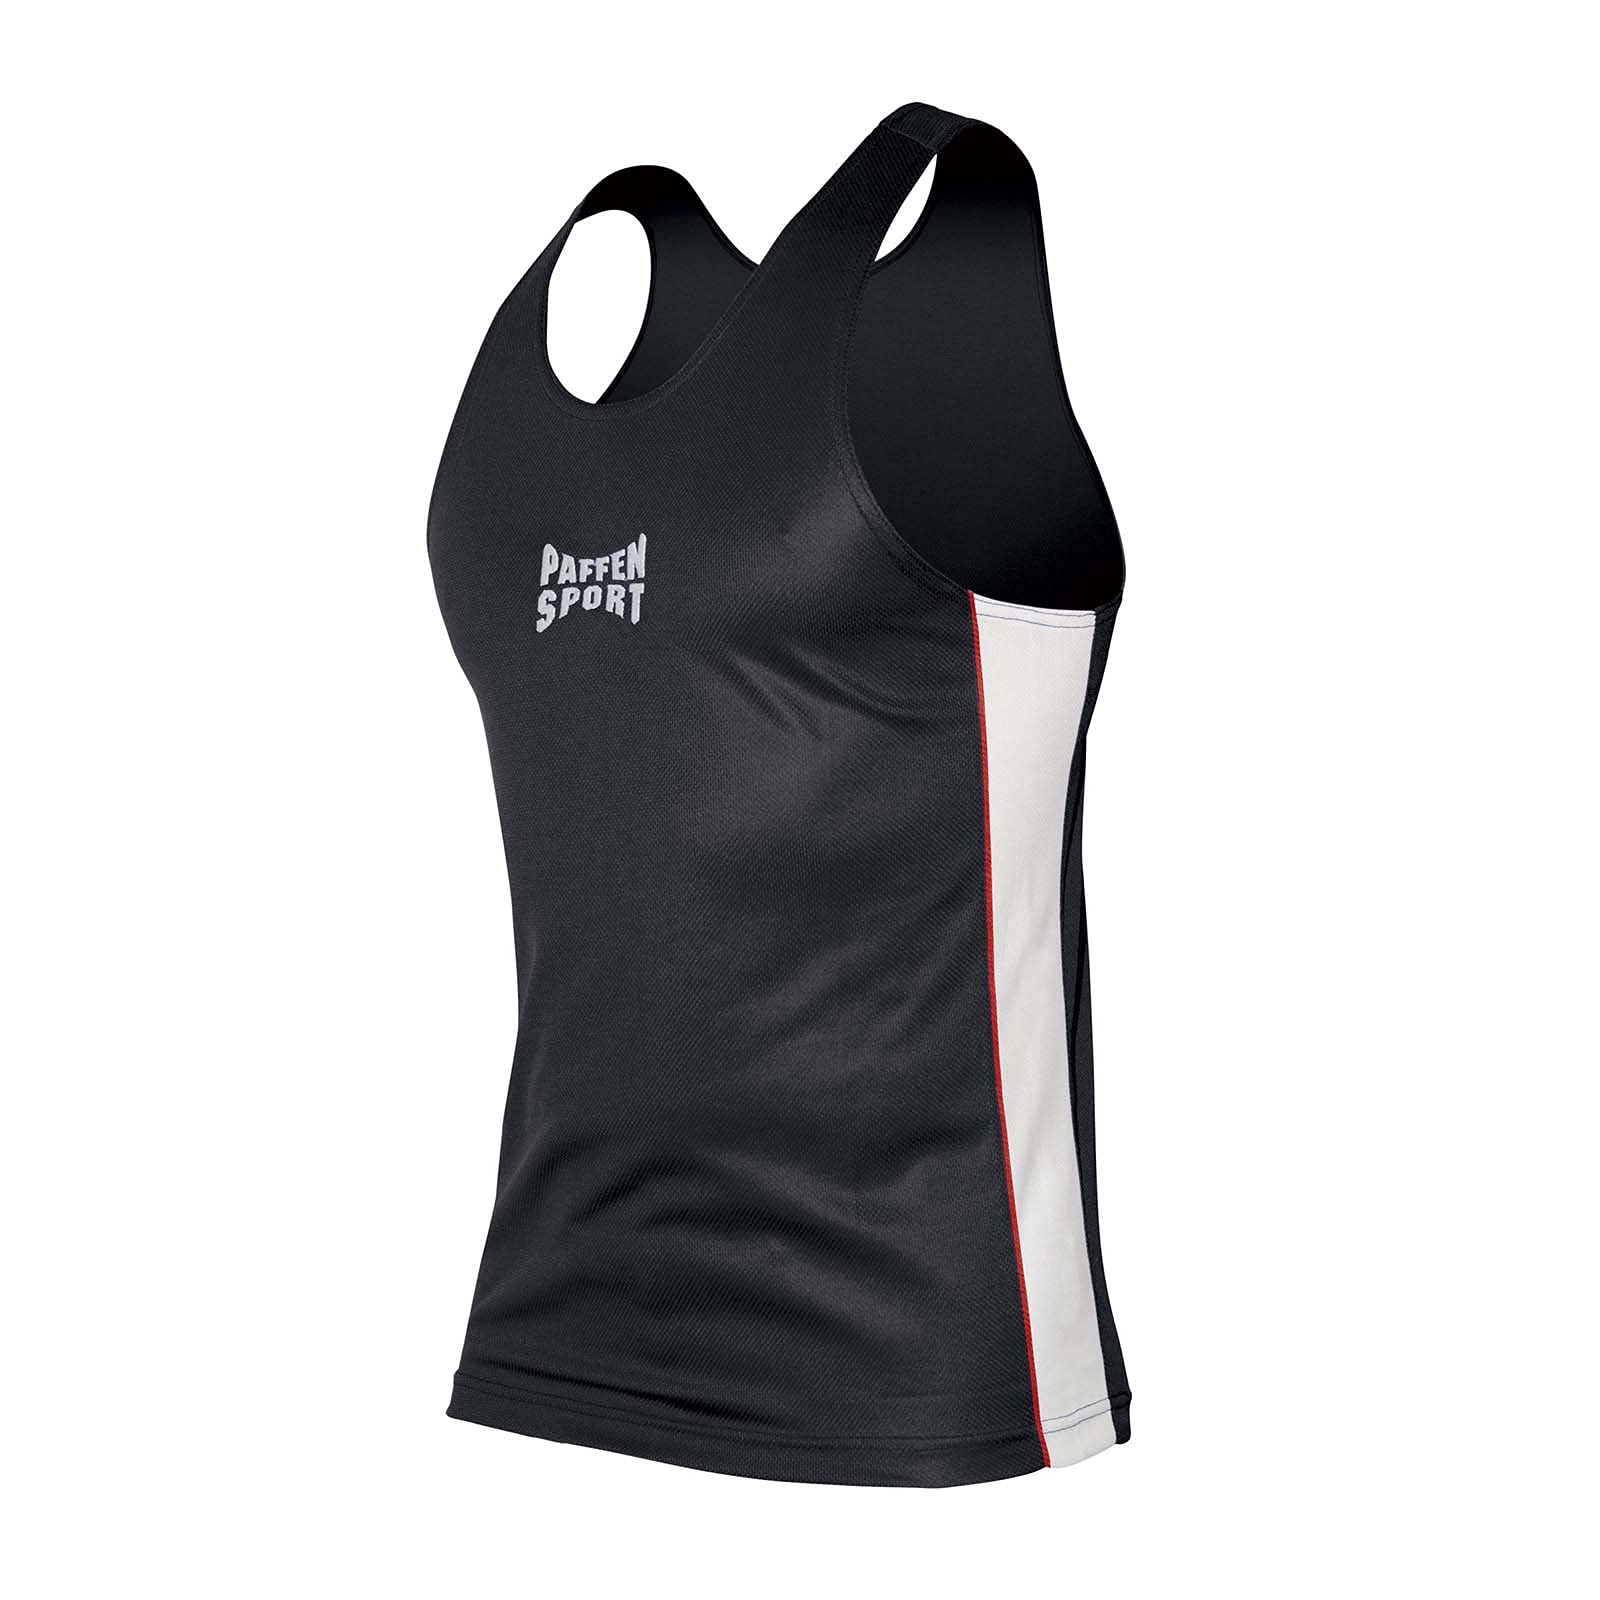 PAFFEN SPORT Contest Boxerhemd; schwarz/weiß; GR: XXL